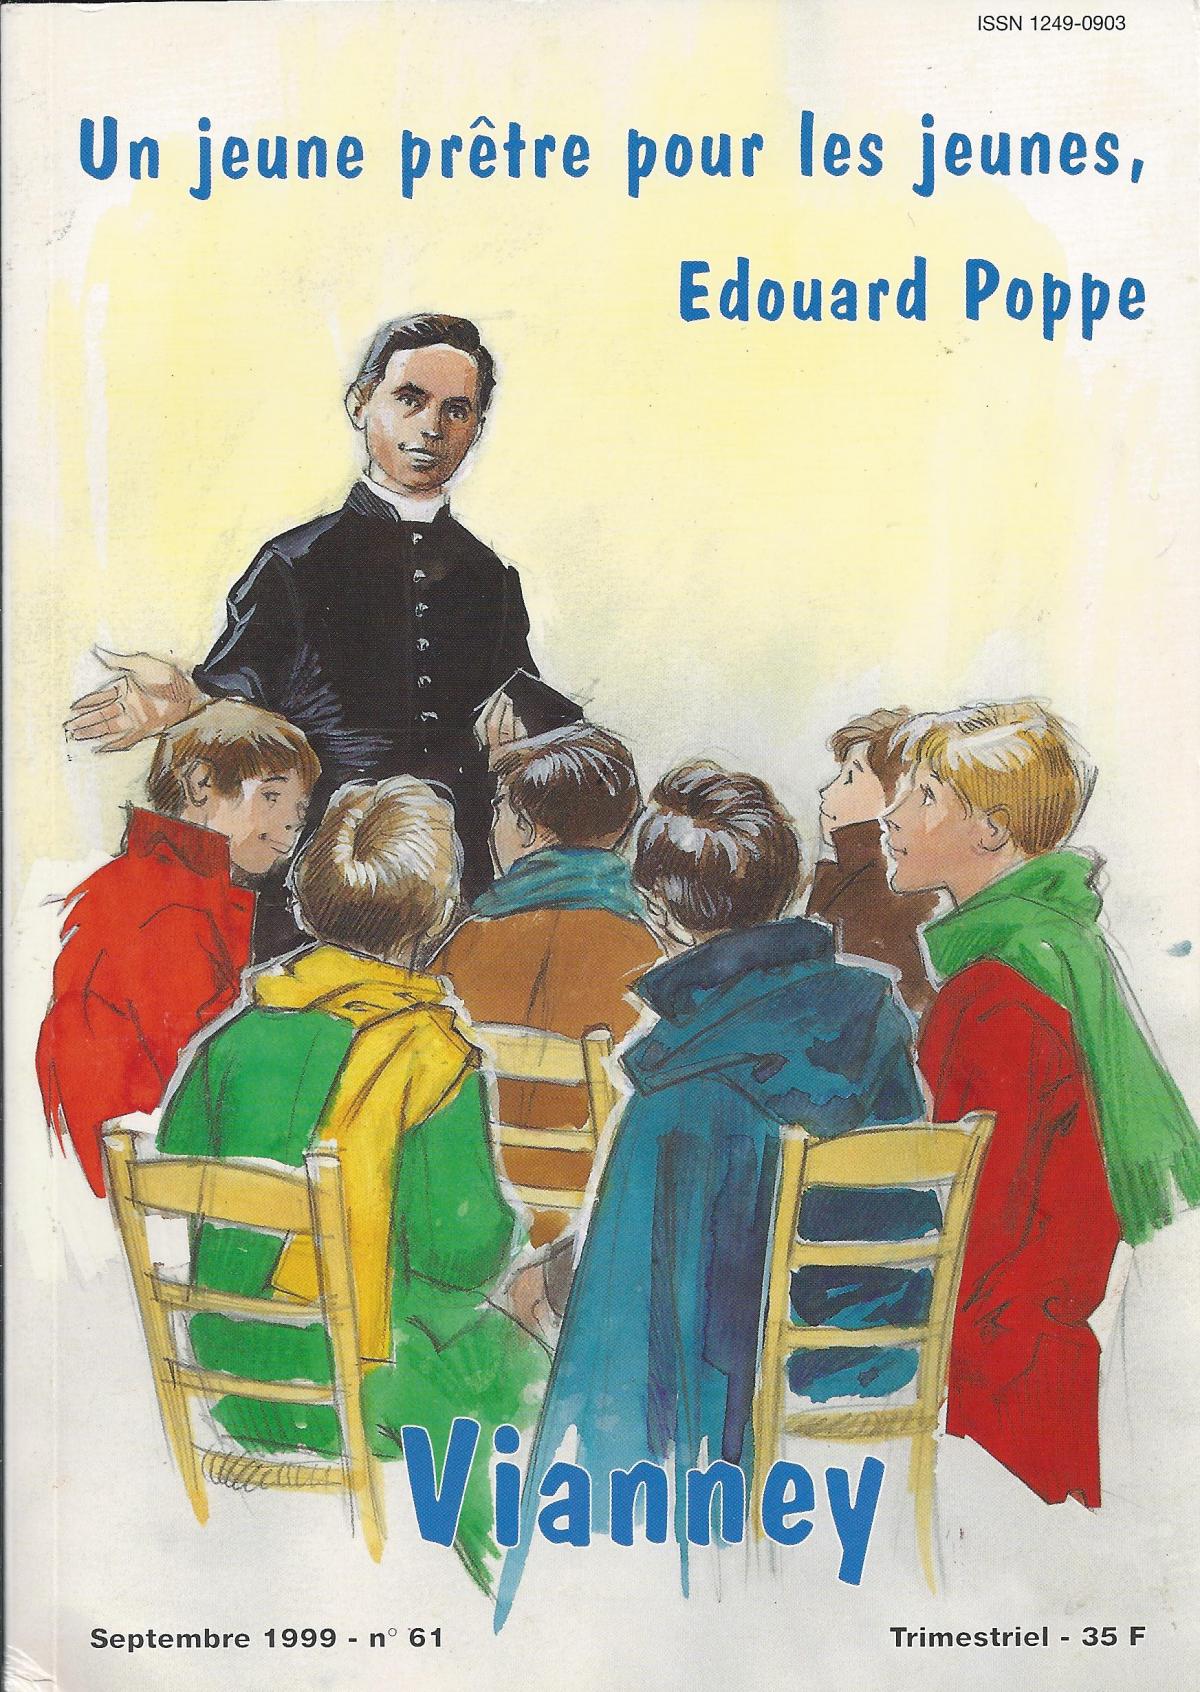 Un jeune prêtre pour les jeunes, Edouard Poppe